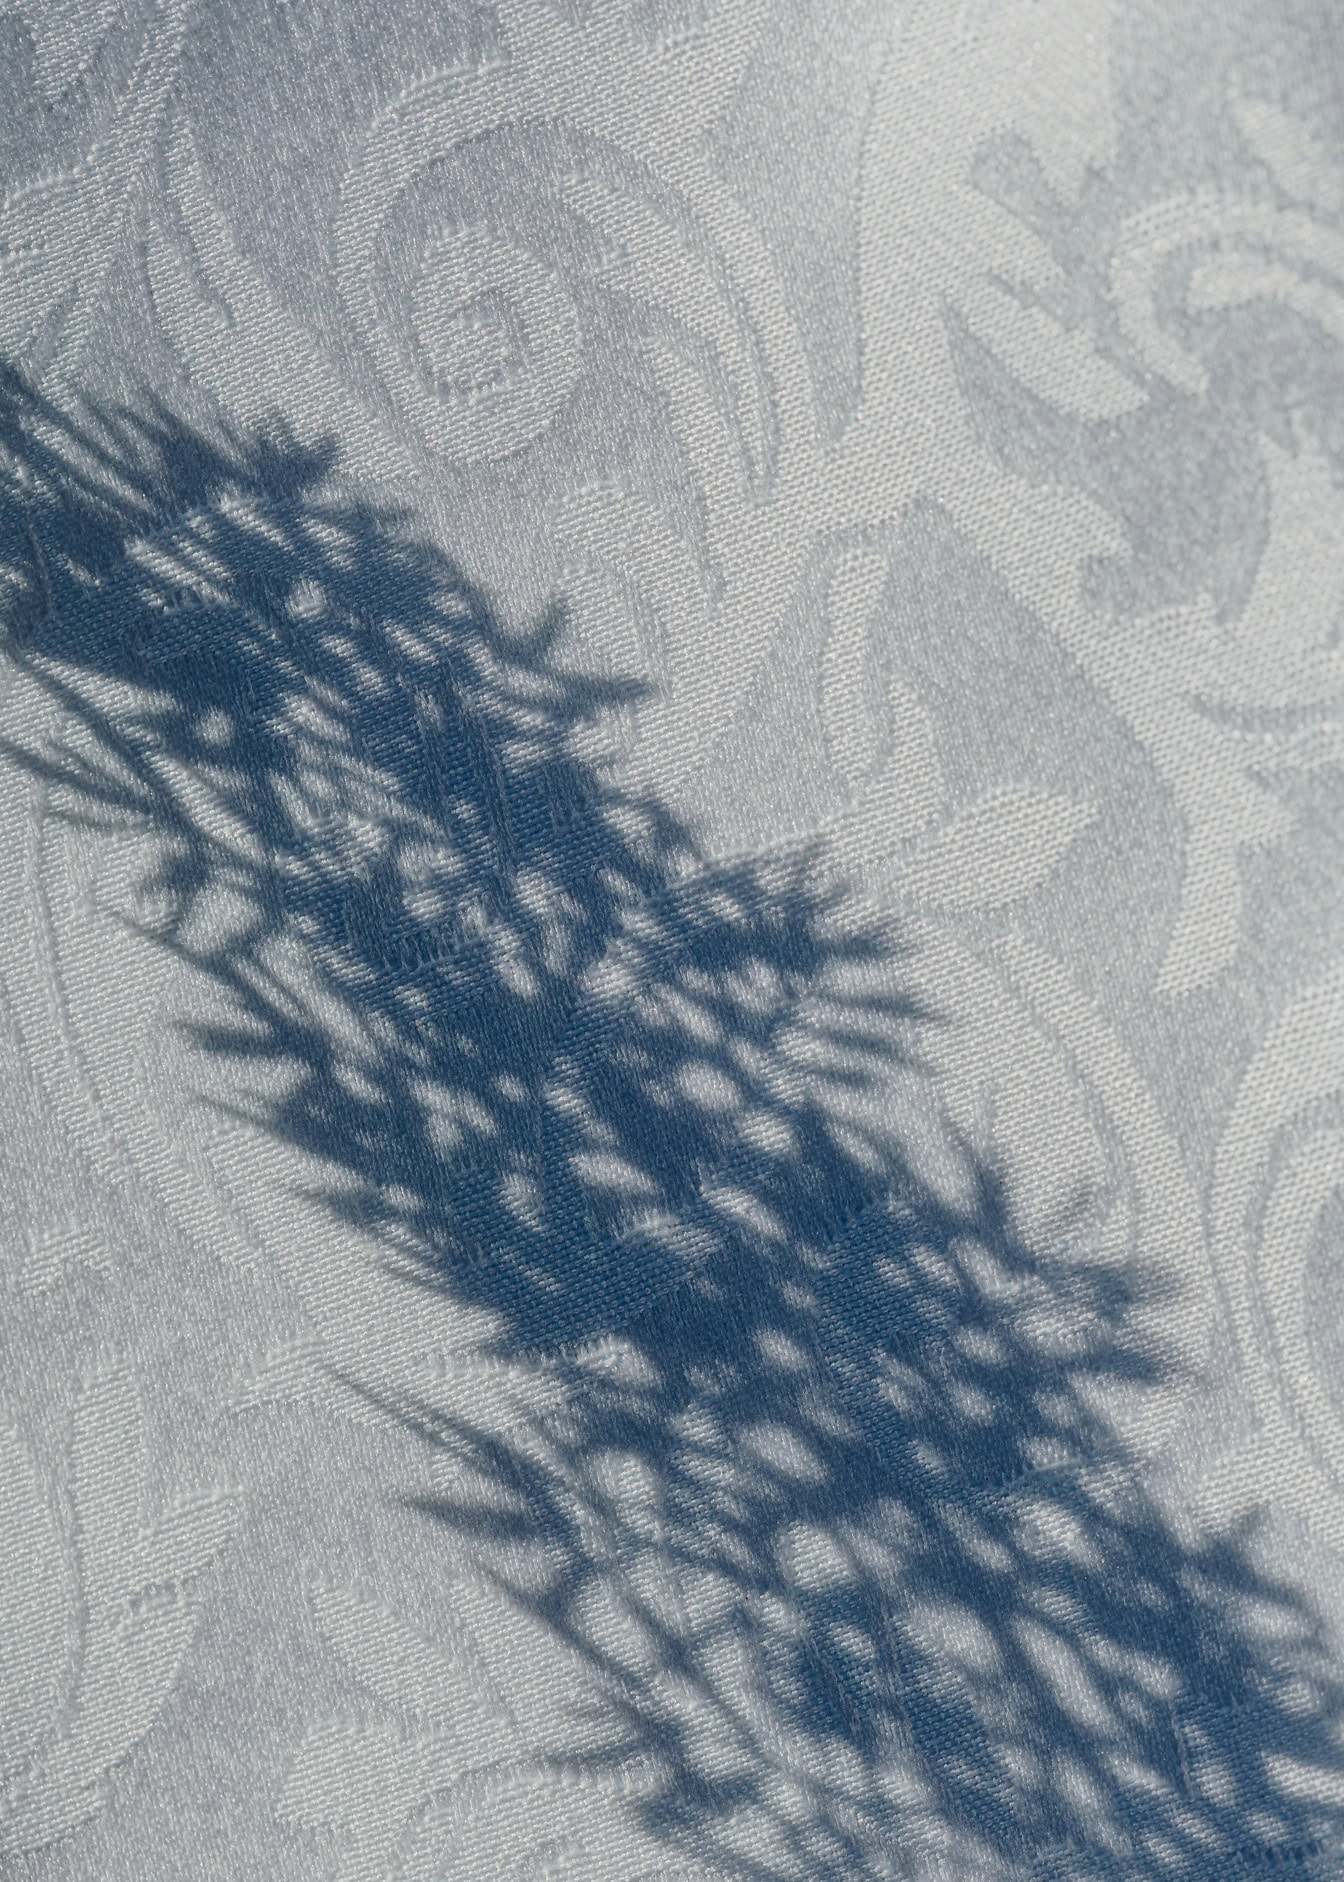 Bóng của một cái cây trên bề mặt vải damask trắng